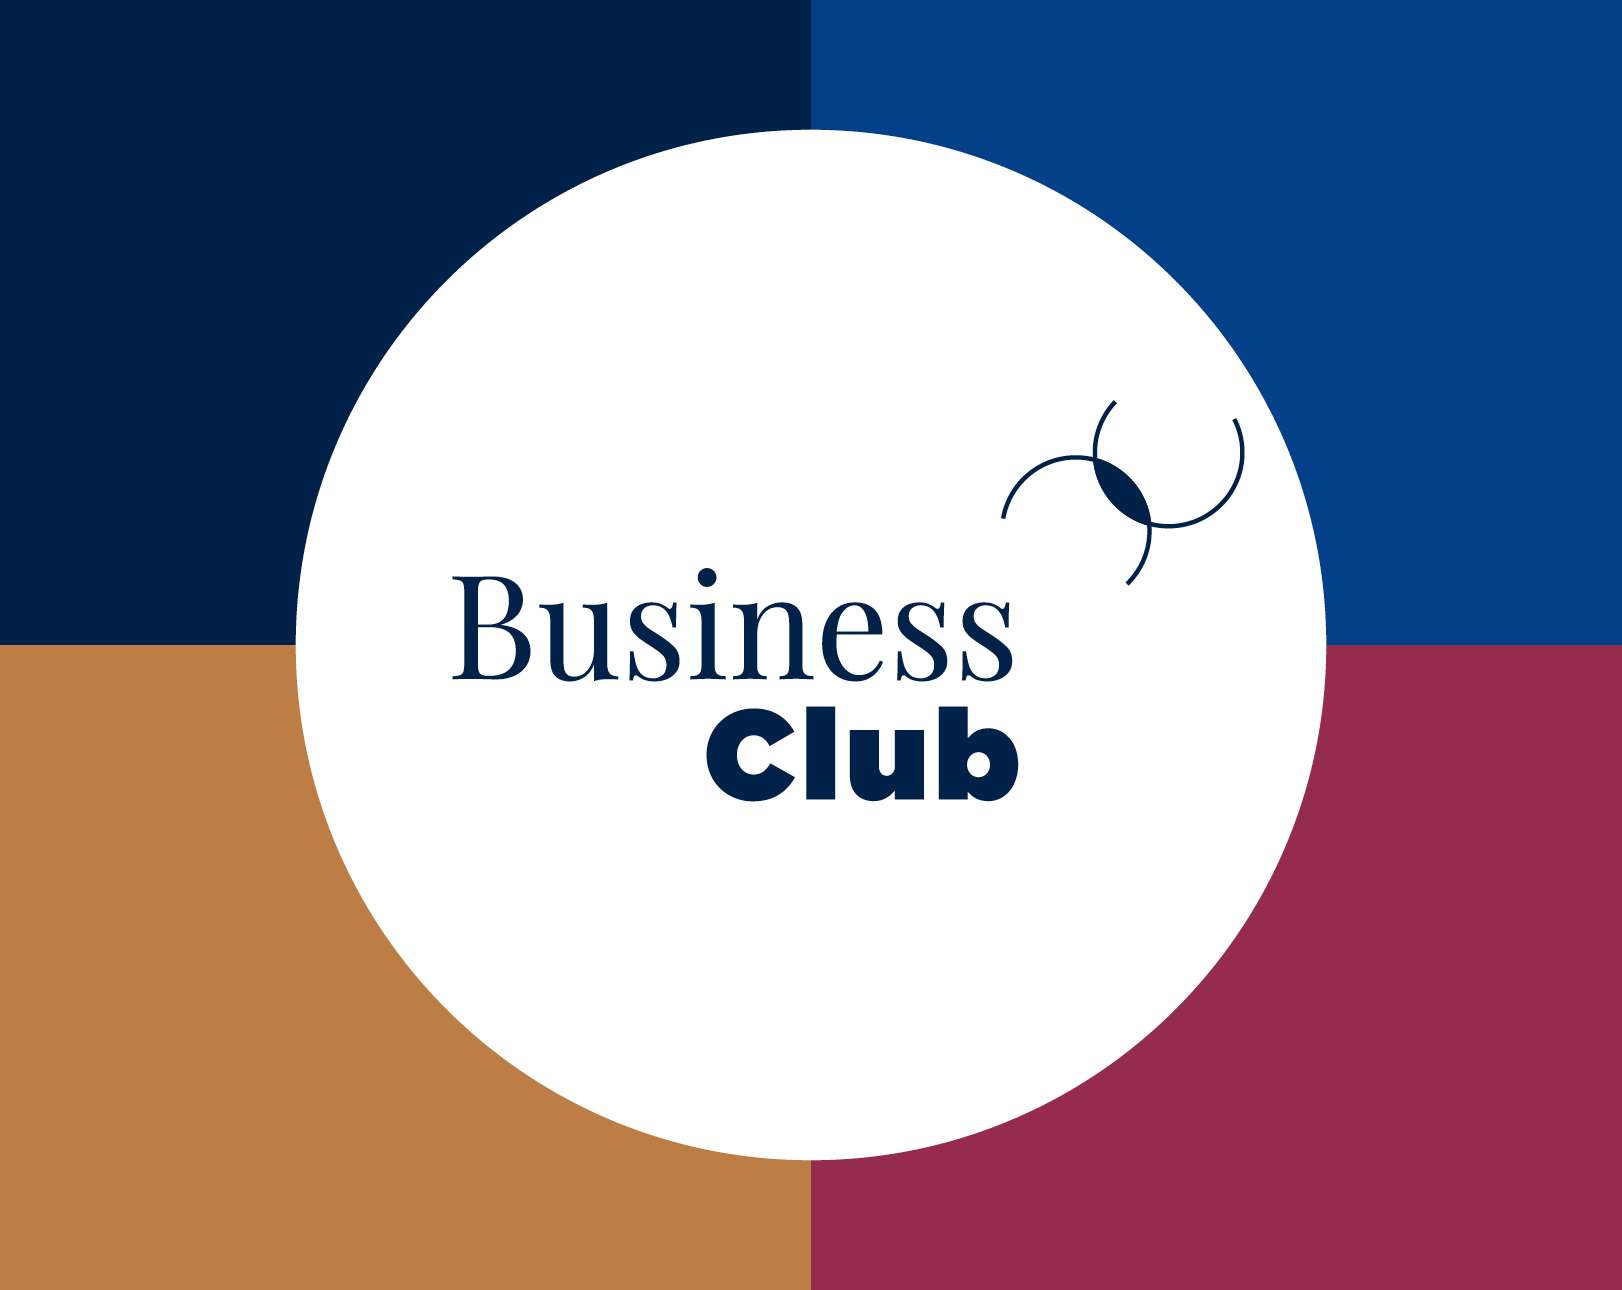 Refonte de l'identité visuelle des Business Club de la Chambre de Commerce de Luxembourg.